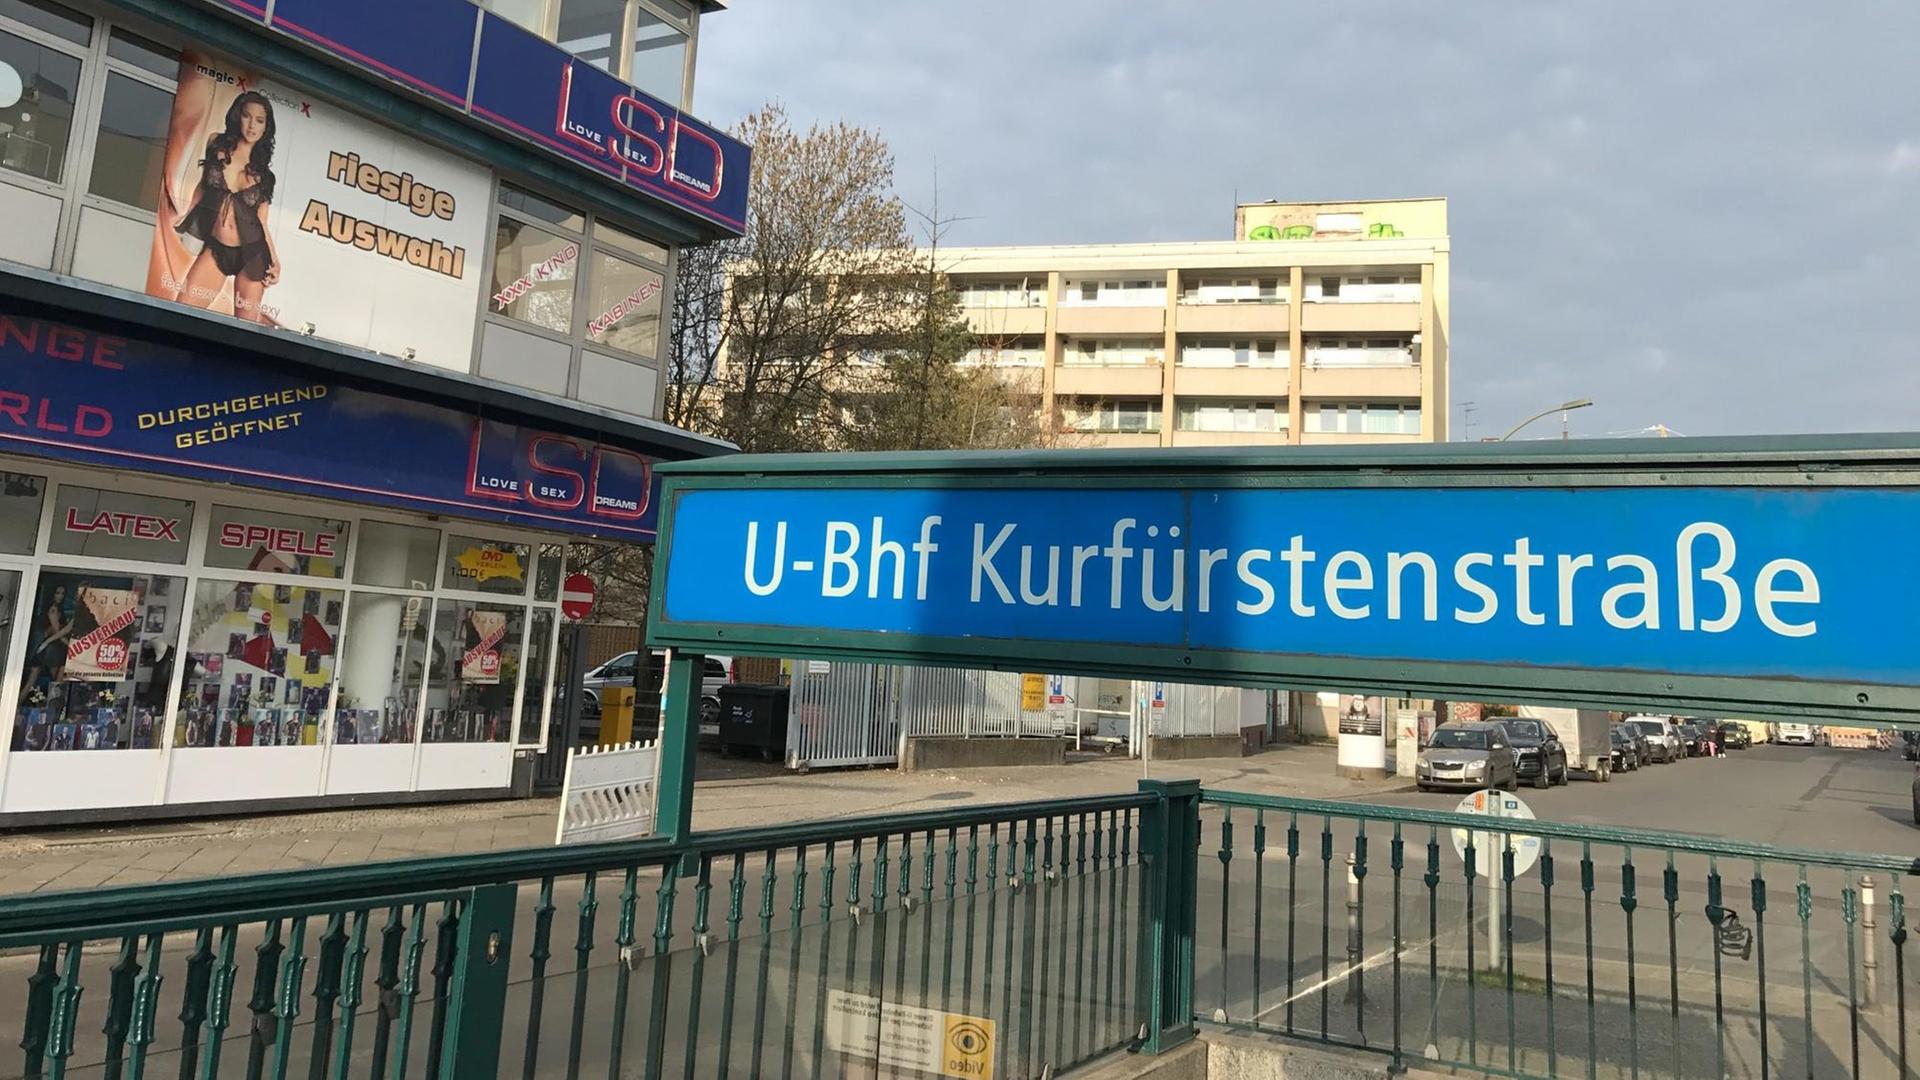 Kurfürstenstraße berlin prostitution